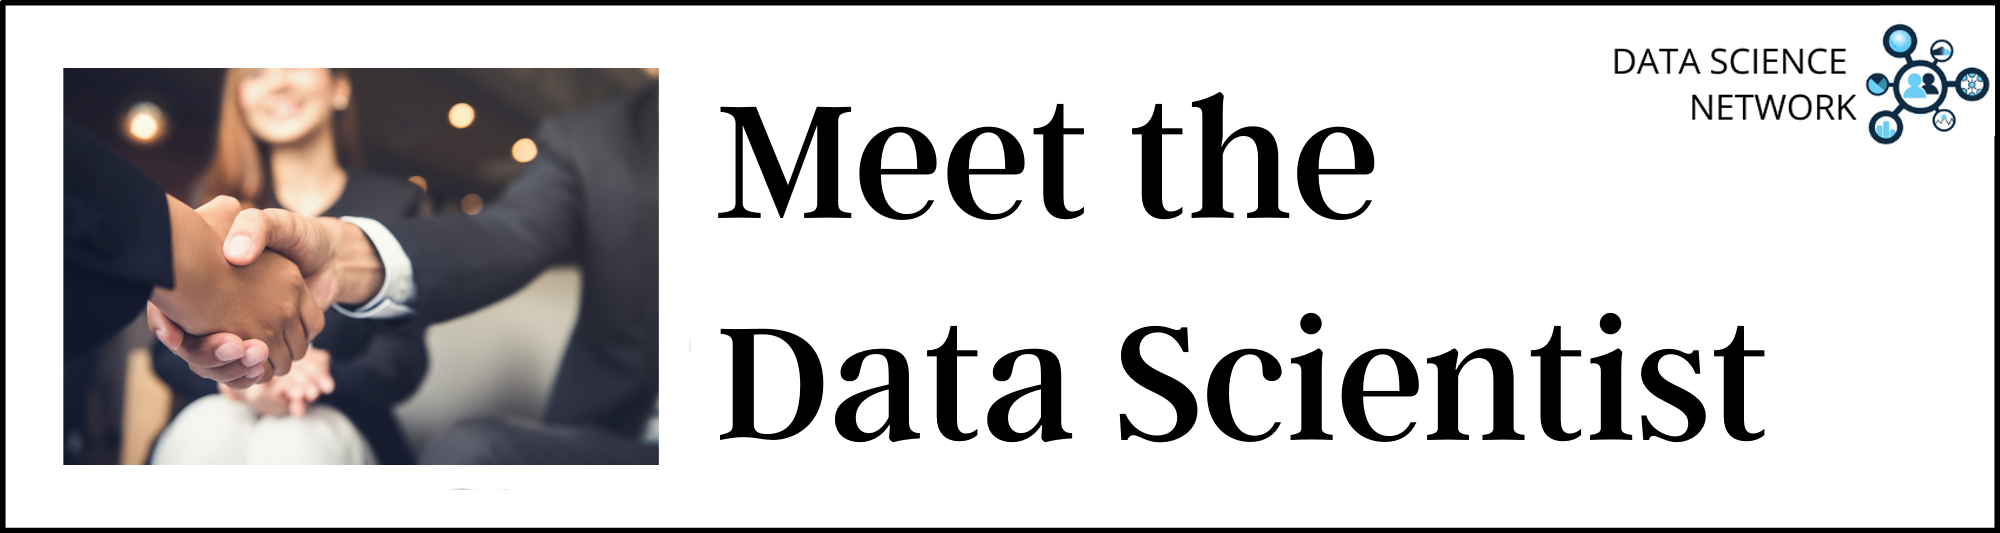 Meet the Data Scientist